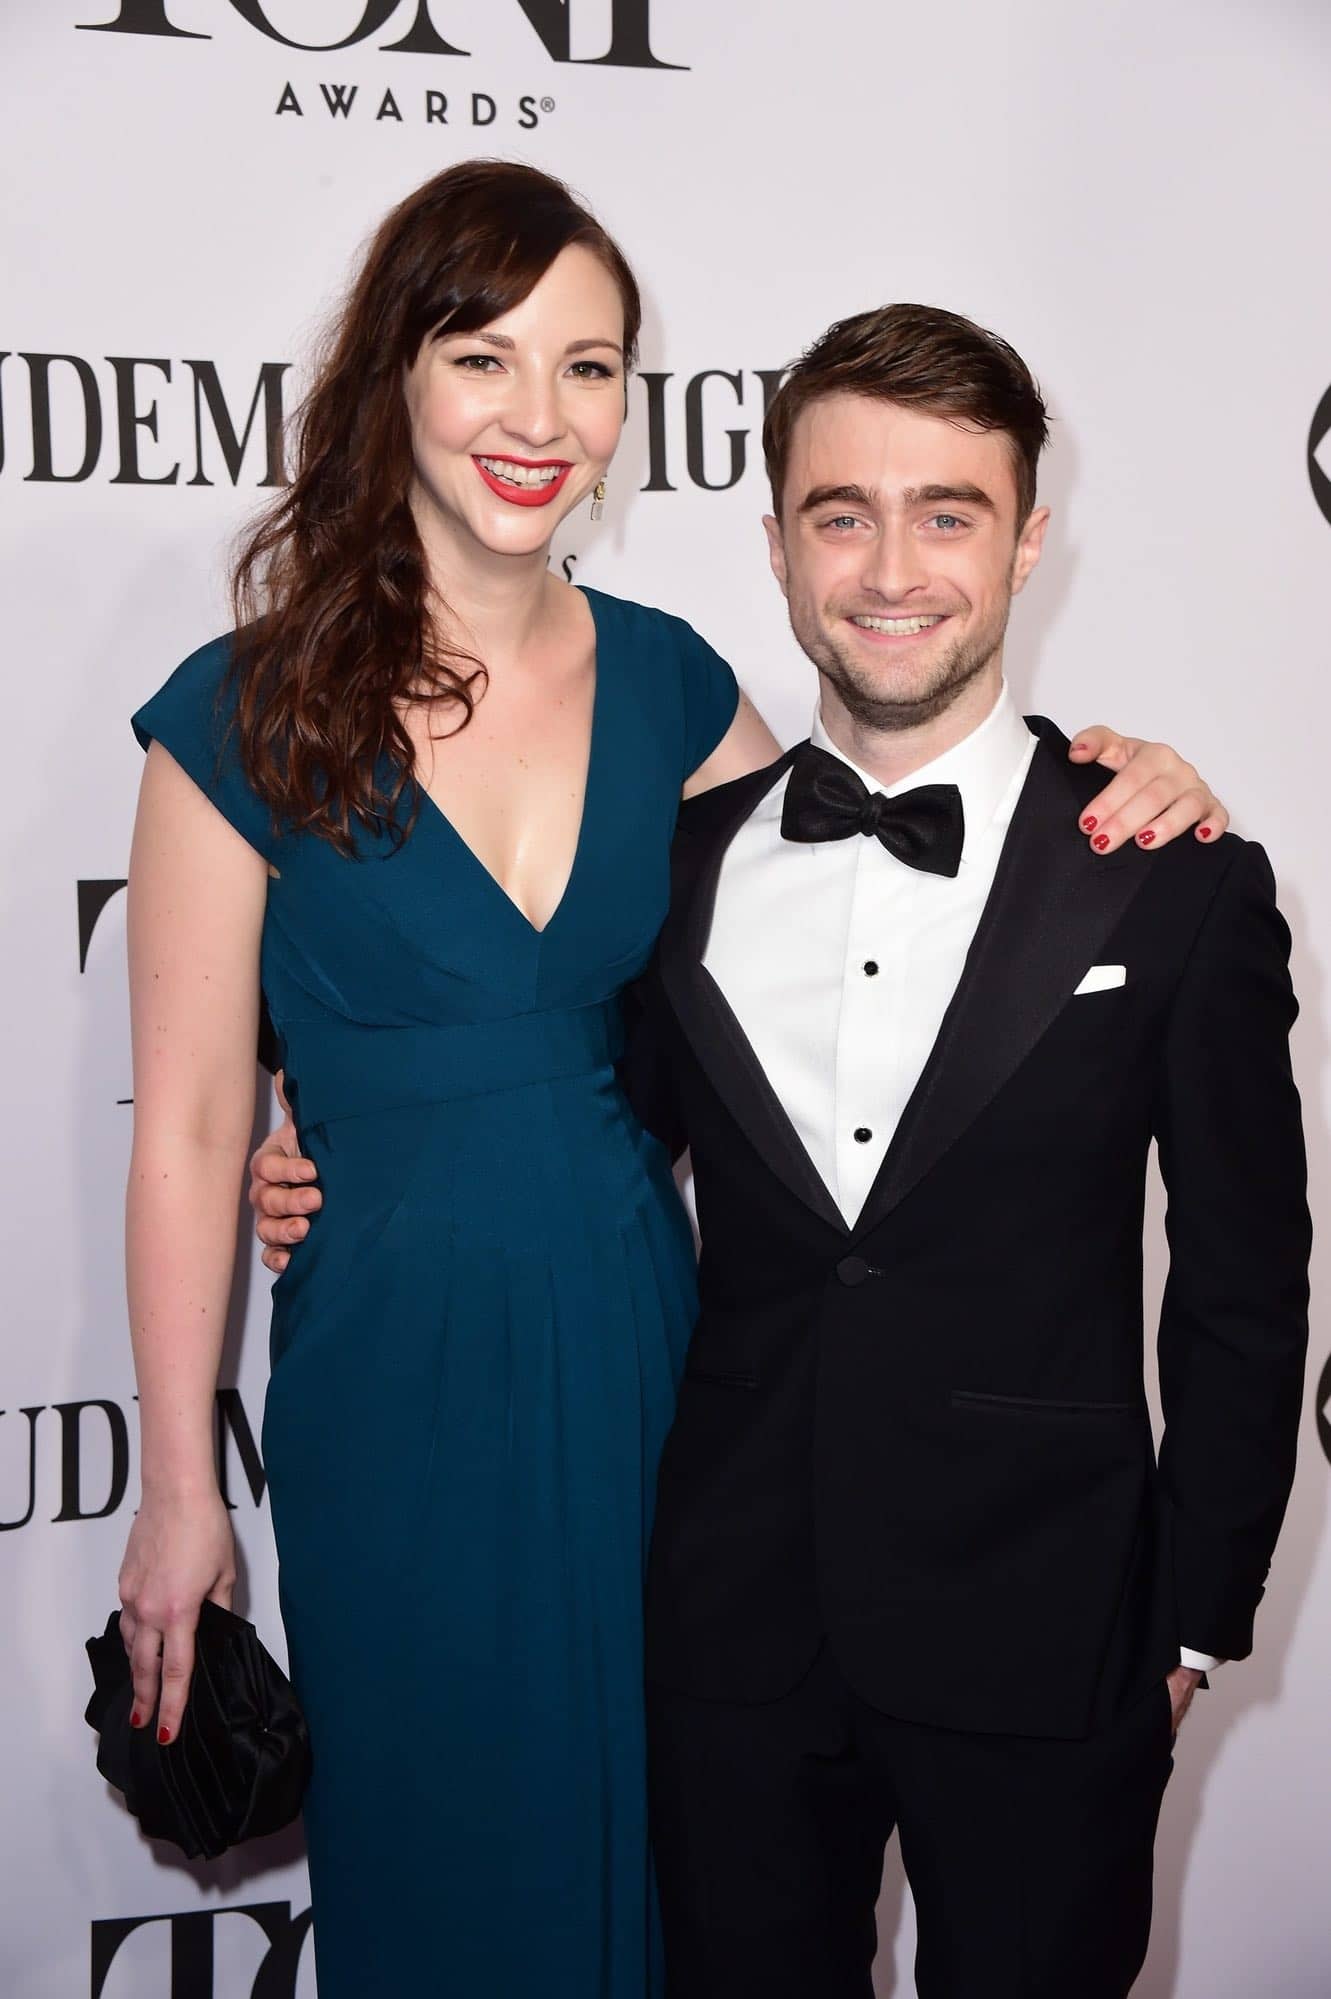 Daniel Radcliffe and Erin Darke